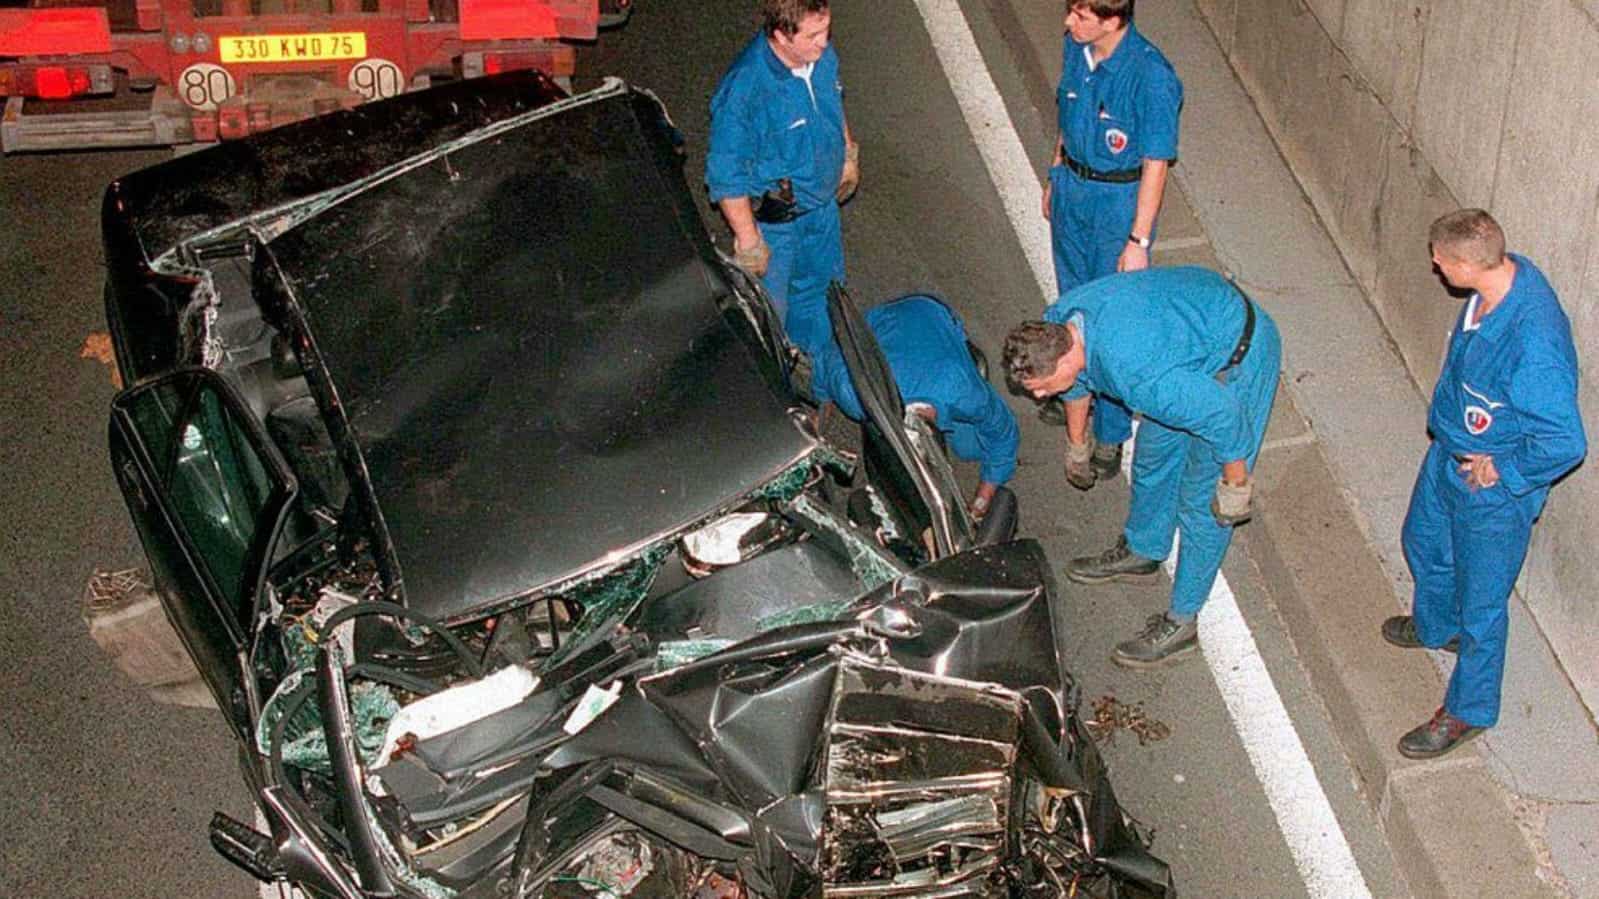 Diana de Gales murió en un accidente automovilístico el 31 de agosto de 1997 en el Túnel del Alma, París